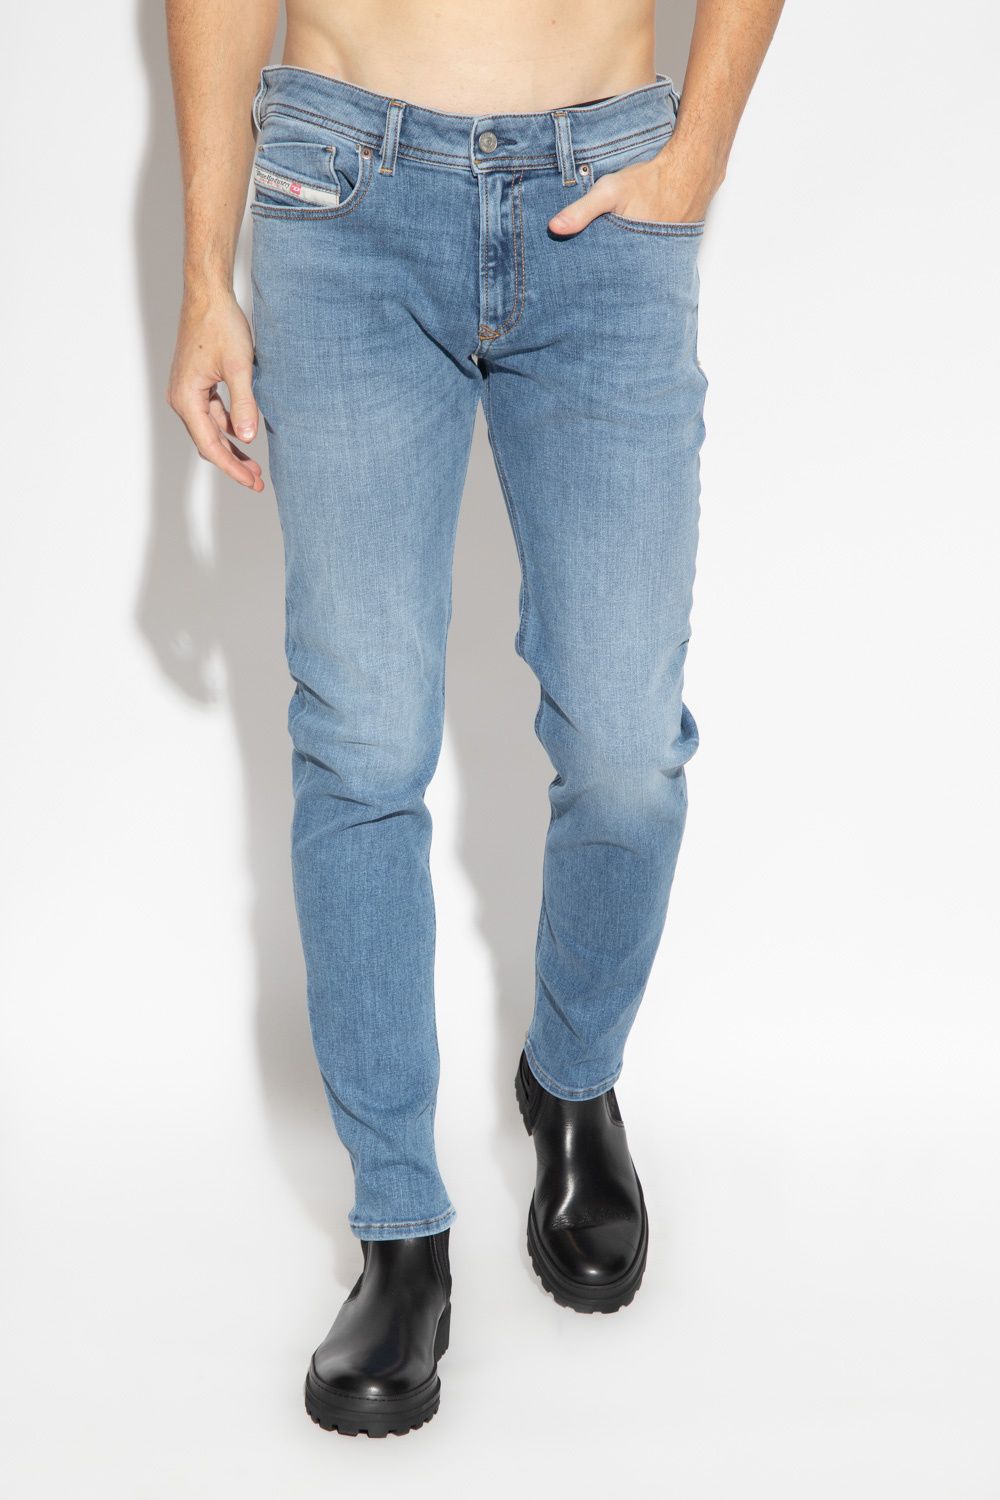 Diesel ‘1979 SLEENKER L.30’ jeans